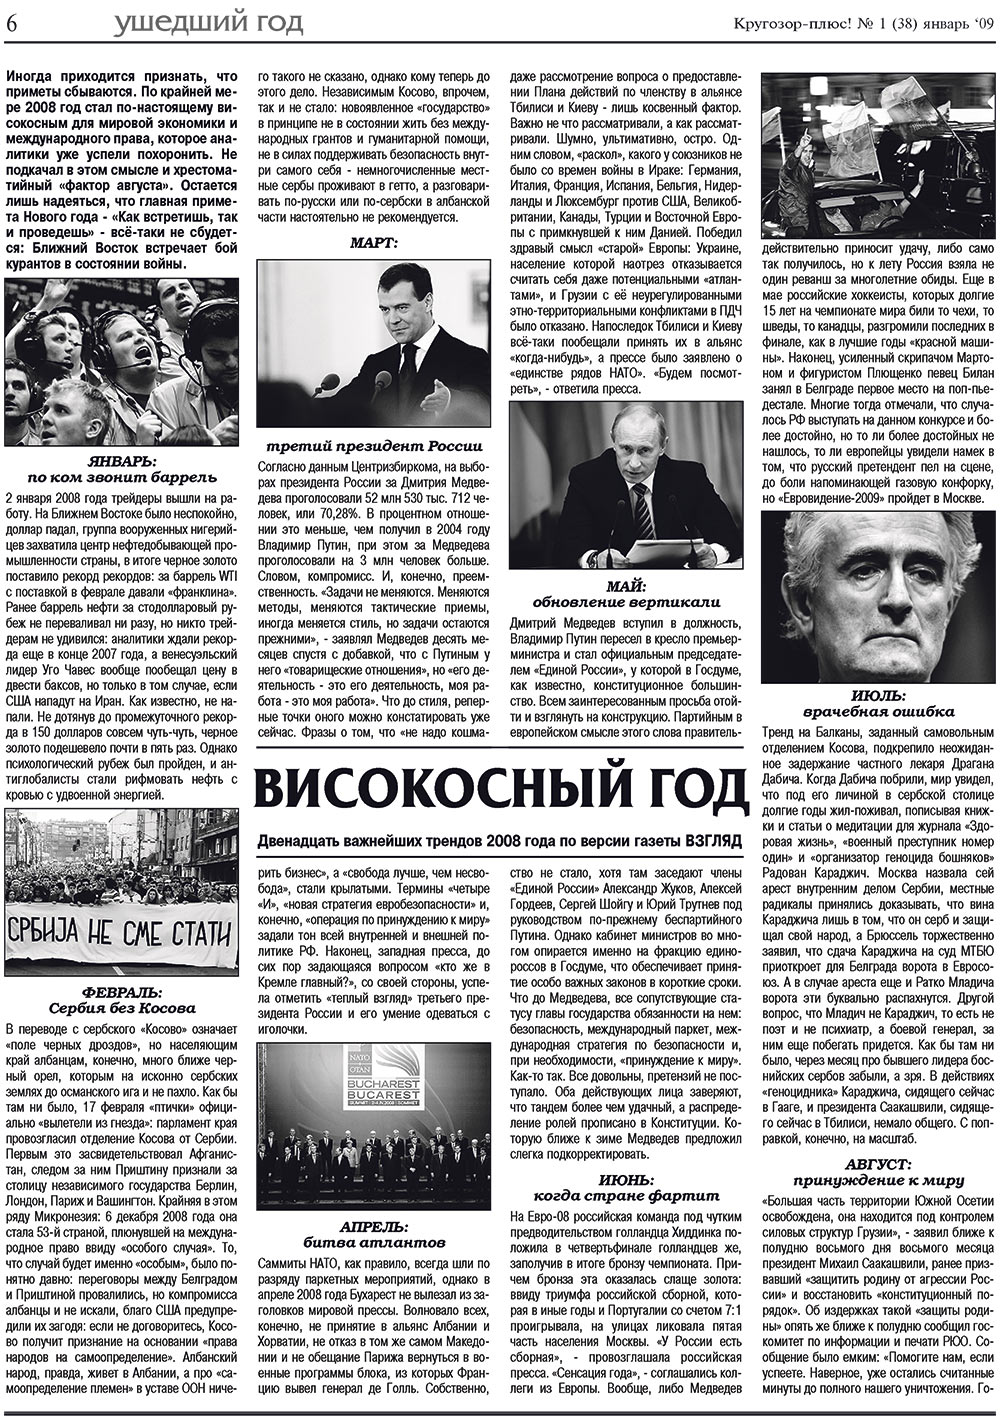 Кругозор плюс!, газета. 2009 №1 стр.6